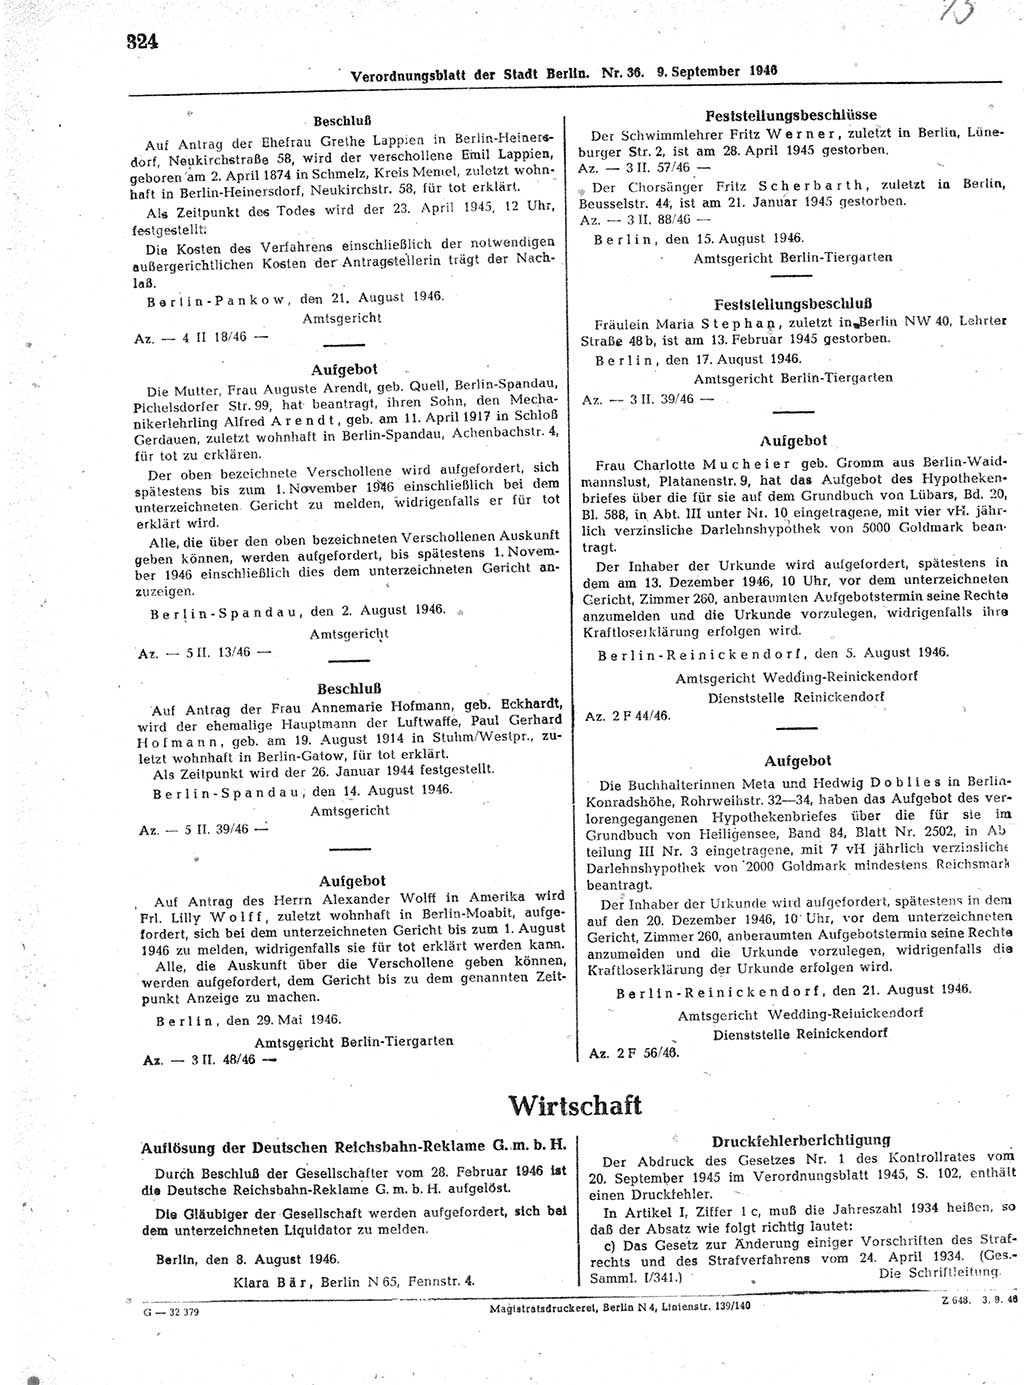 Verordnungsblatt (VOBl.) der Stadt Berlin, für Groß-Berlin 1946, Seite 324 (VOBl. Bln. 1946, S. 324)